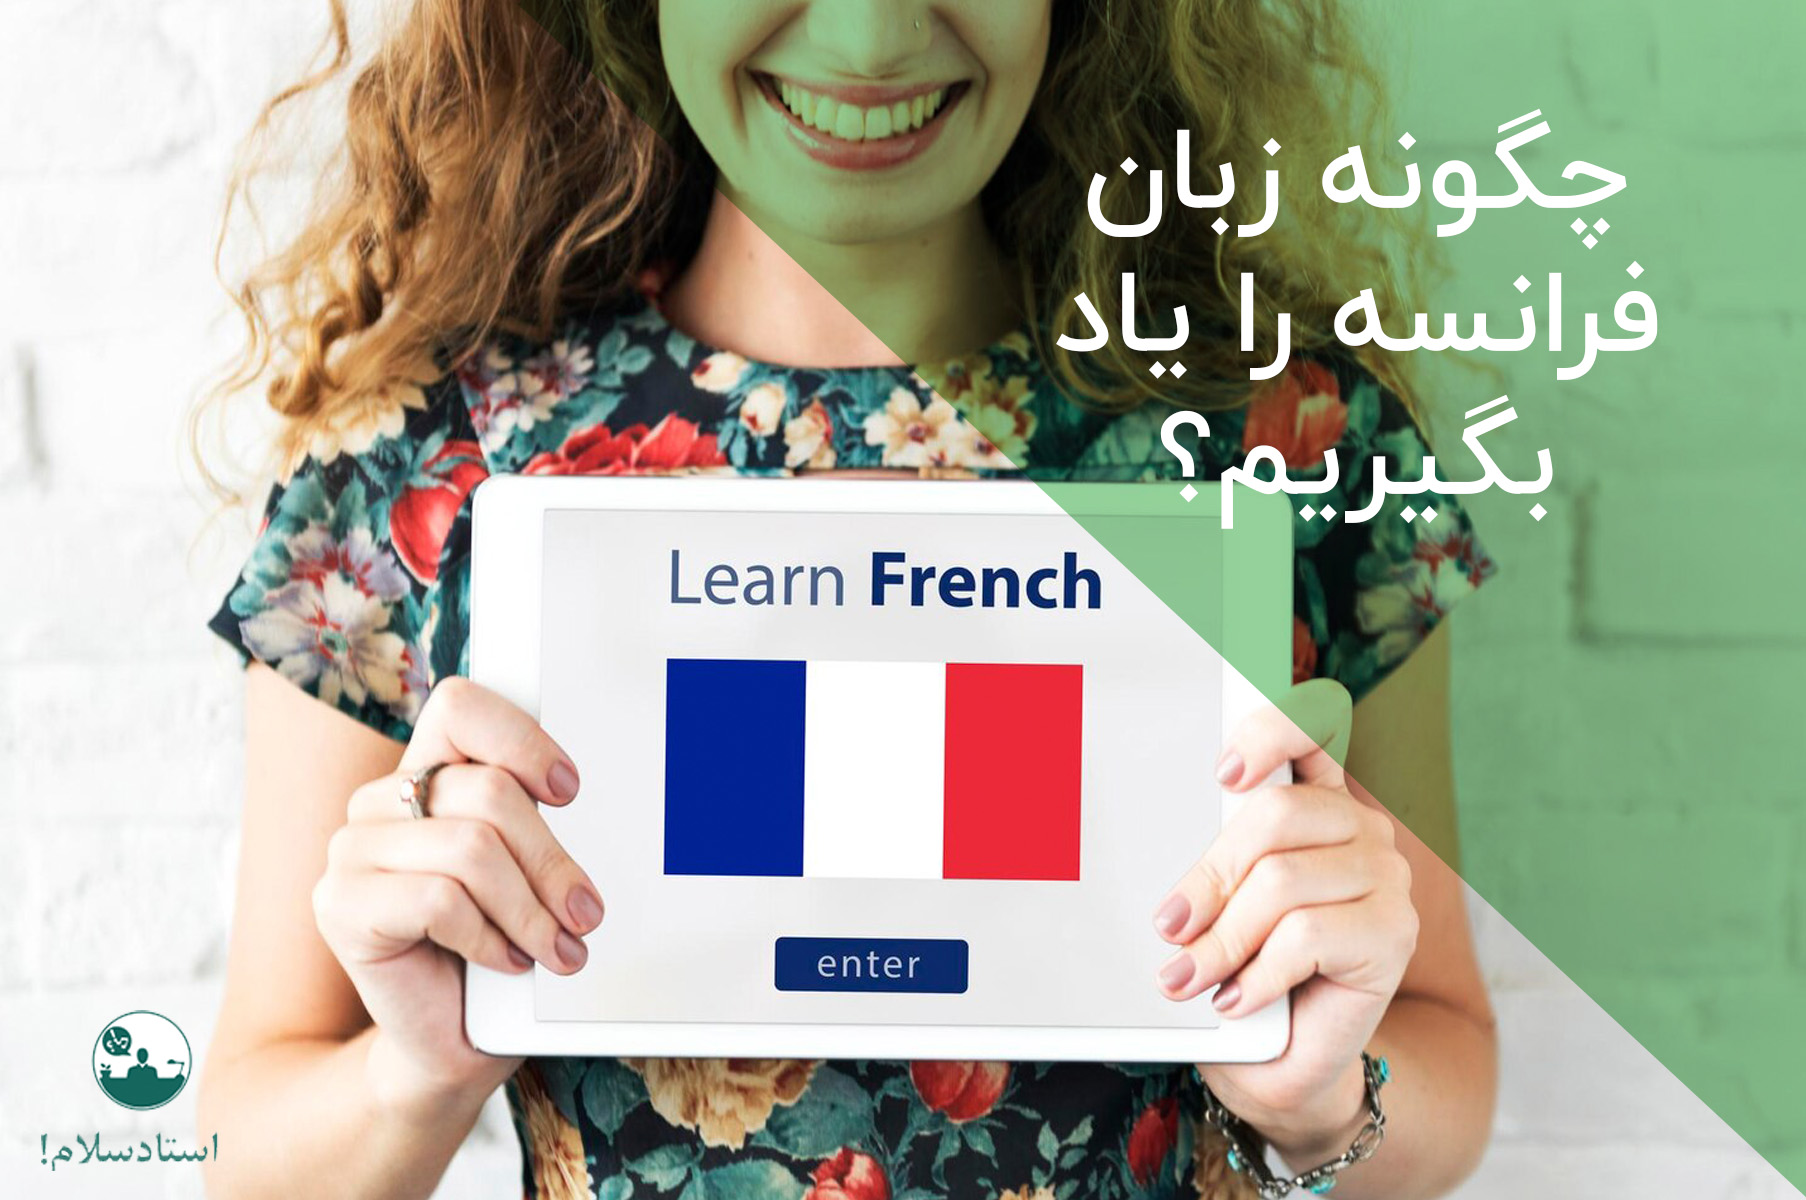 چگونه زبان فرانسه را یاد بگیریم؟